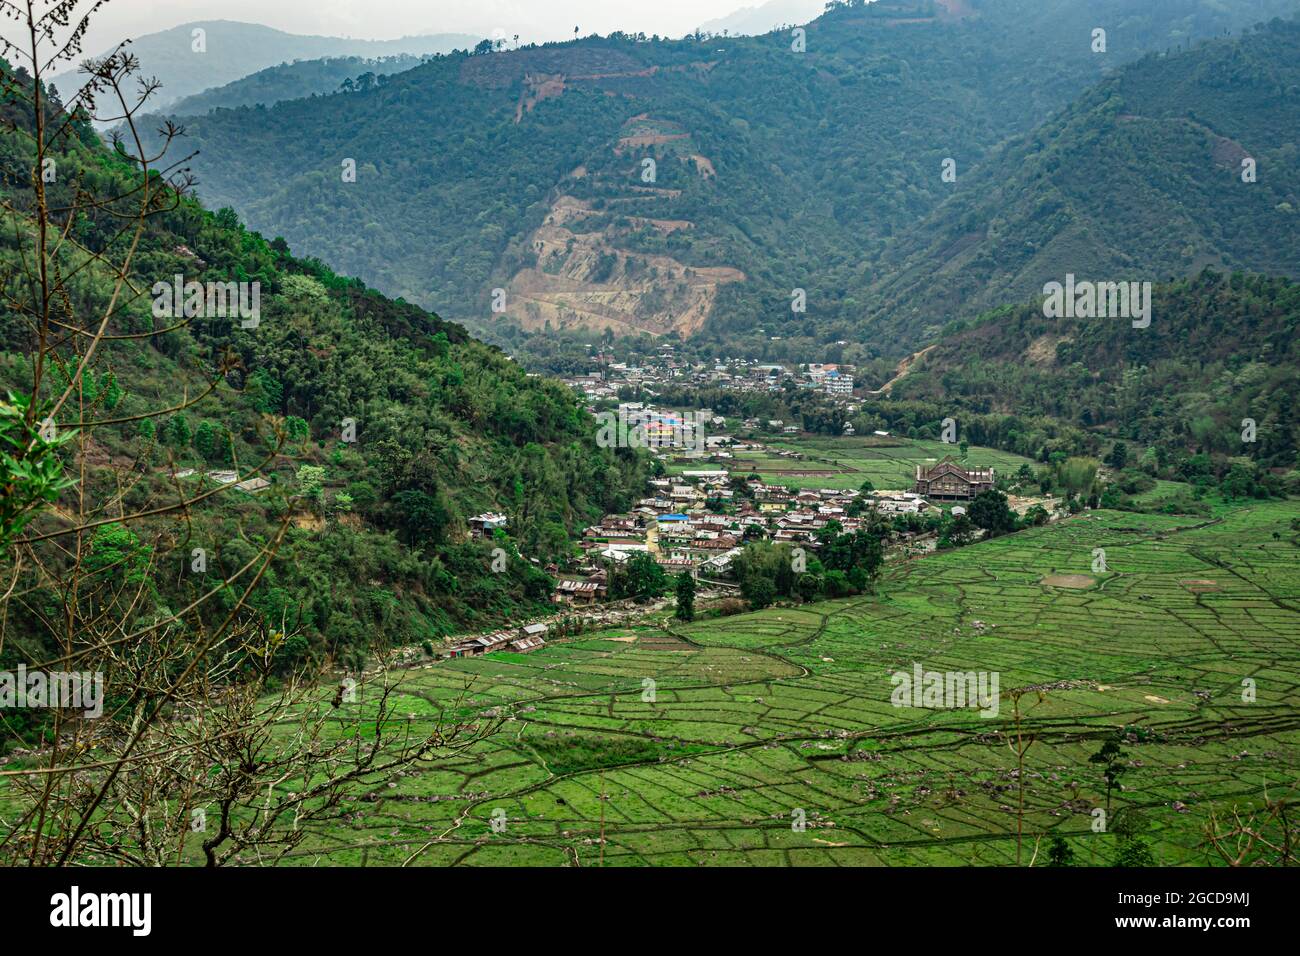 Dorf am Fuße des Berges mit Reisfeldern Stockfoto